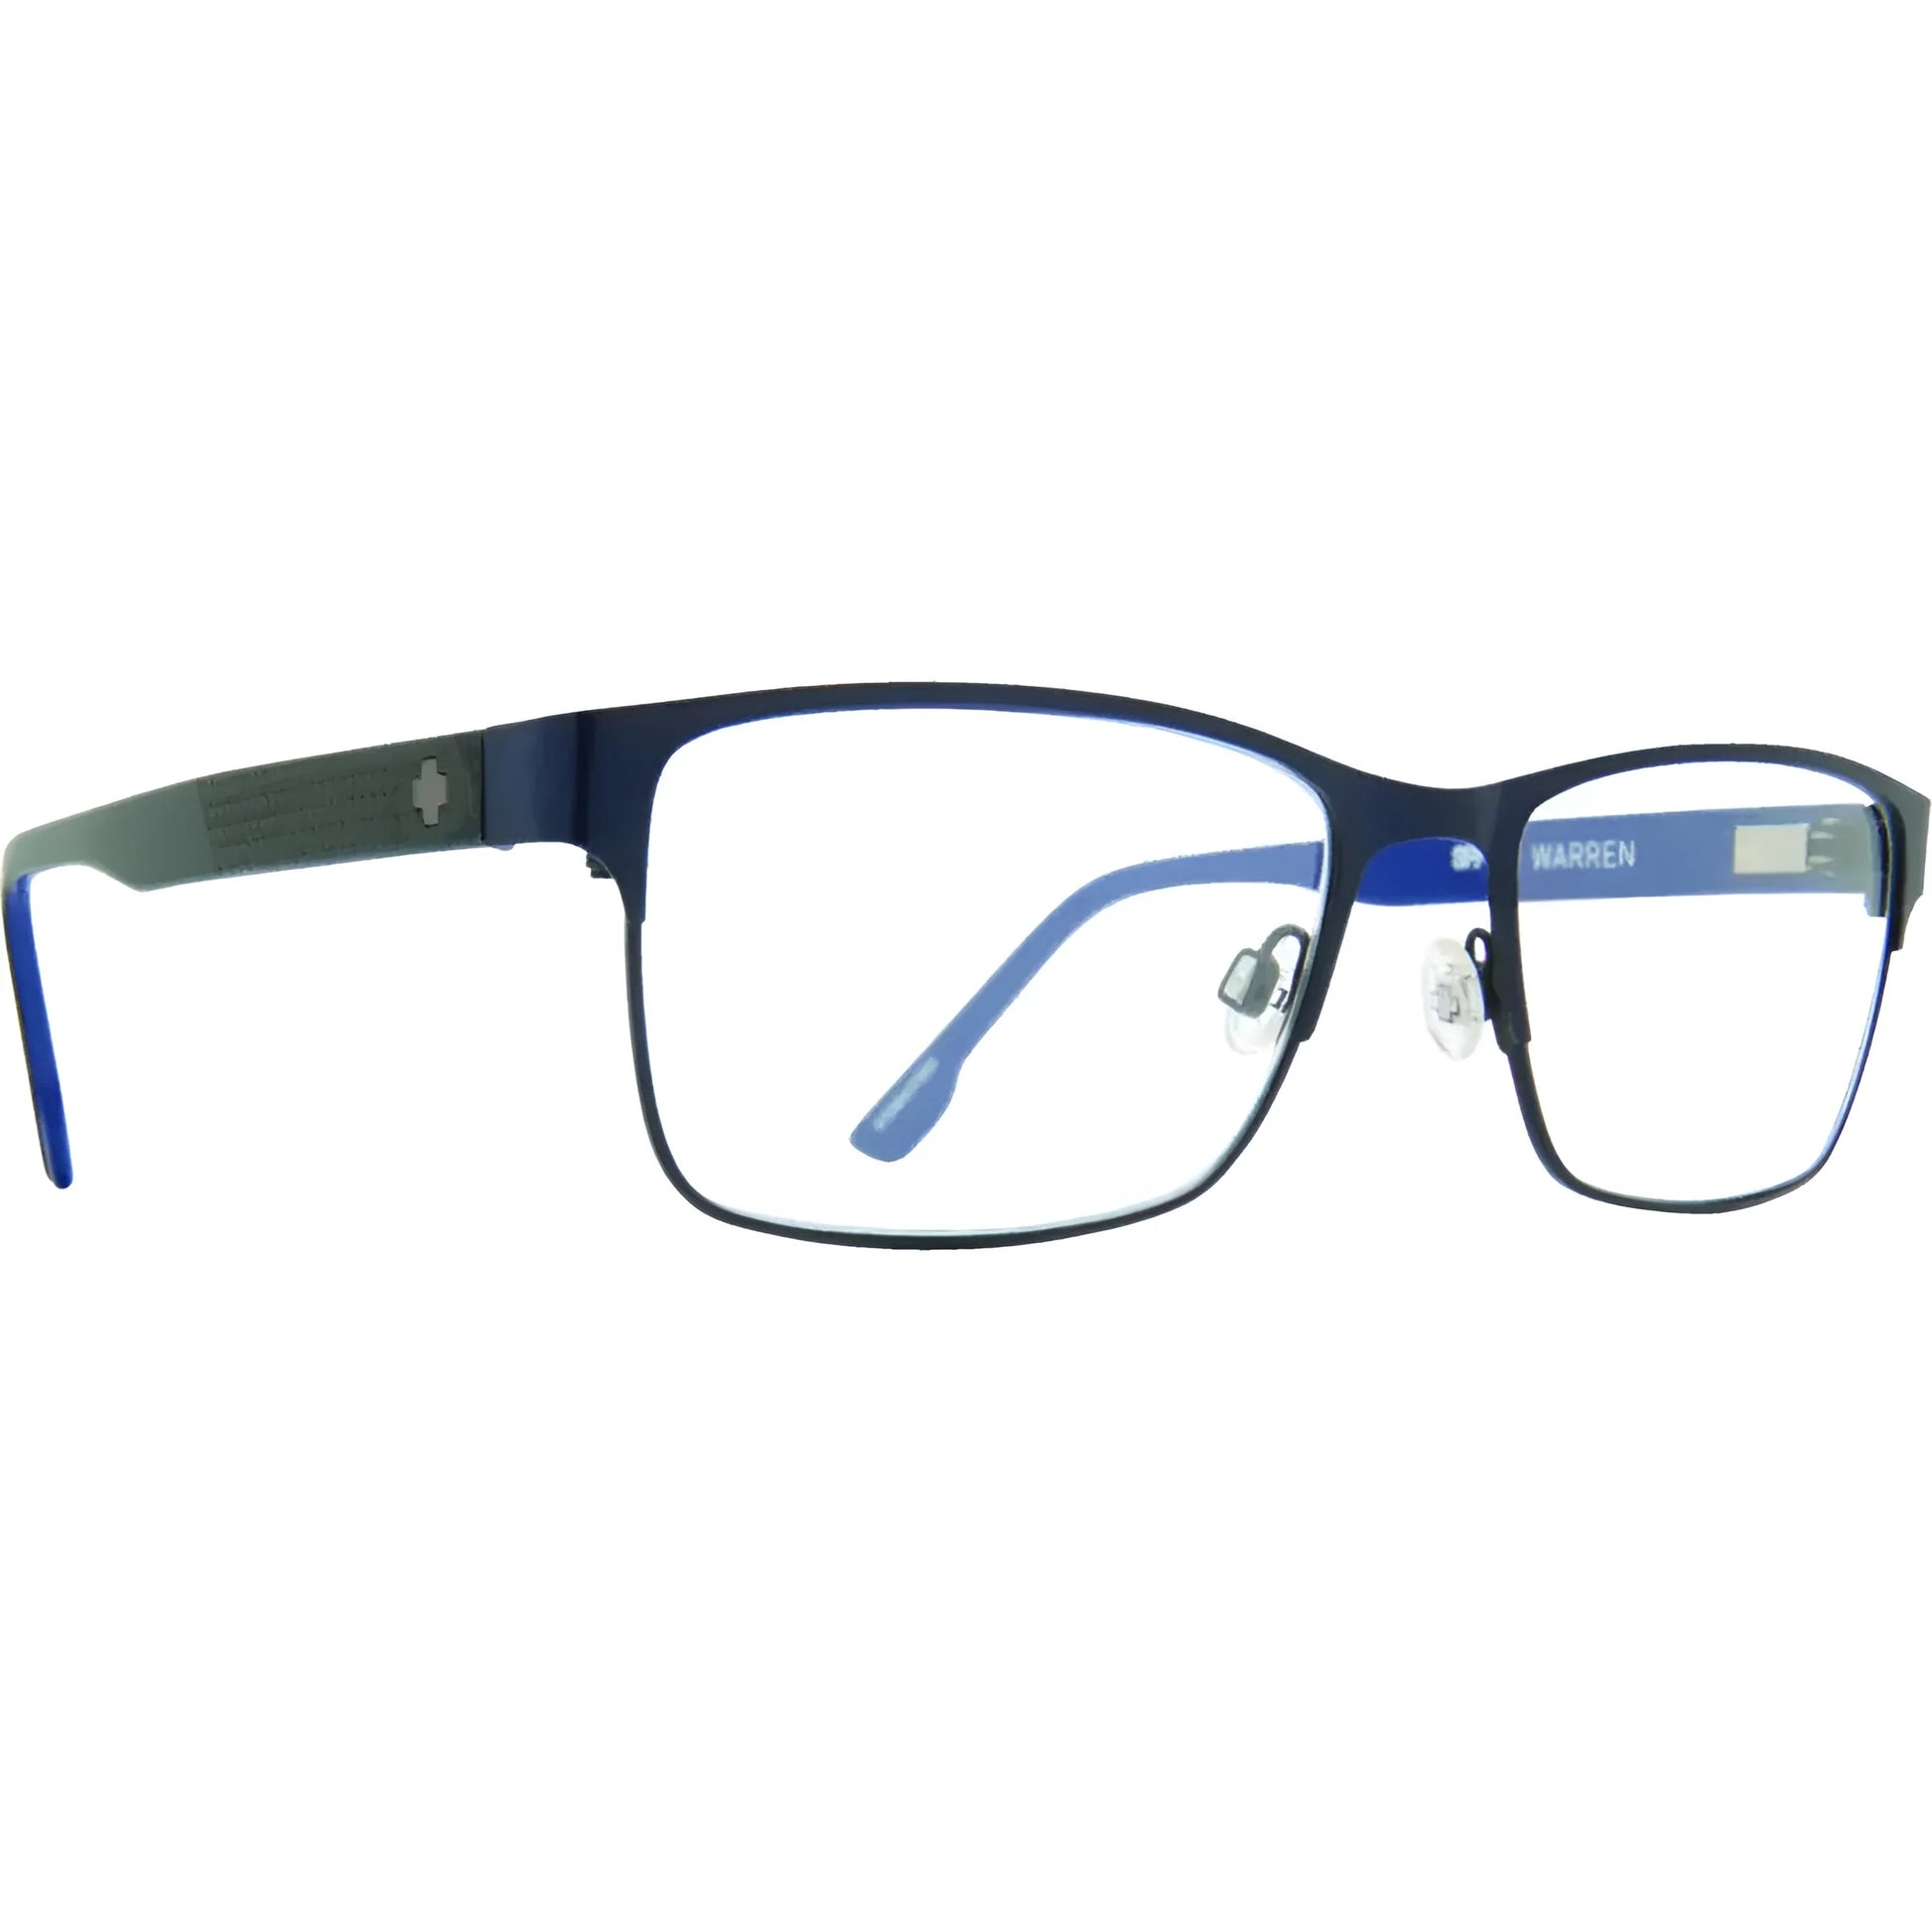 SPY Warren Eyeglasses Matte Dark Navy / Blue